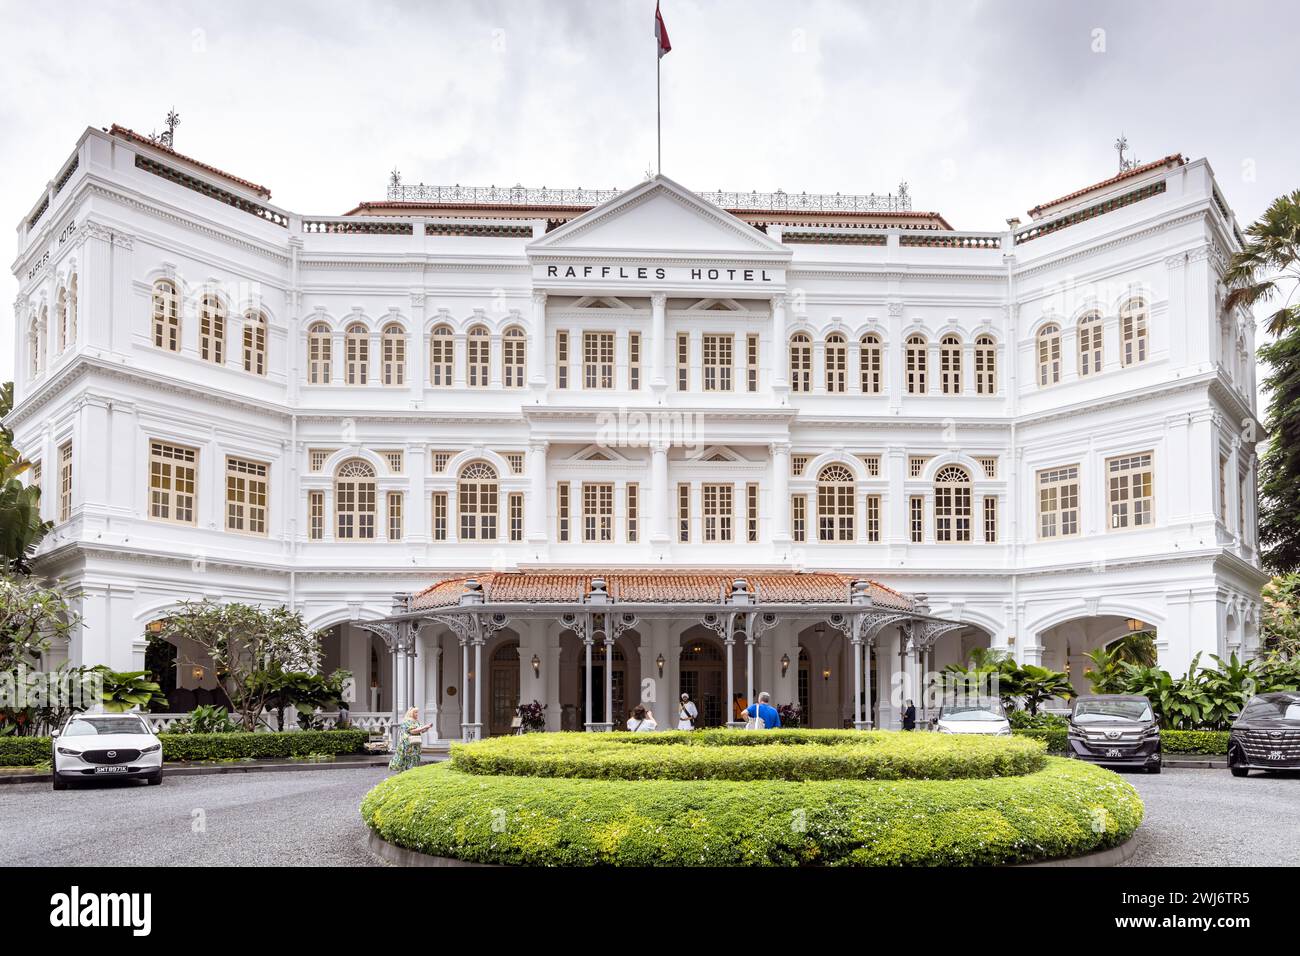 L'hôtel Raffles à Singapour. Ouvert en 1899, il porte le nom du fondateur de Singapour, Sir Stamford Raffles. Banque D'Images